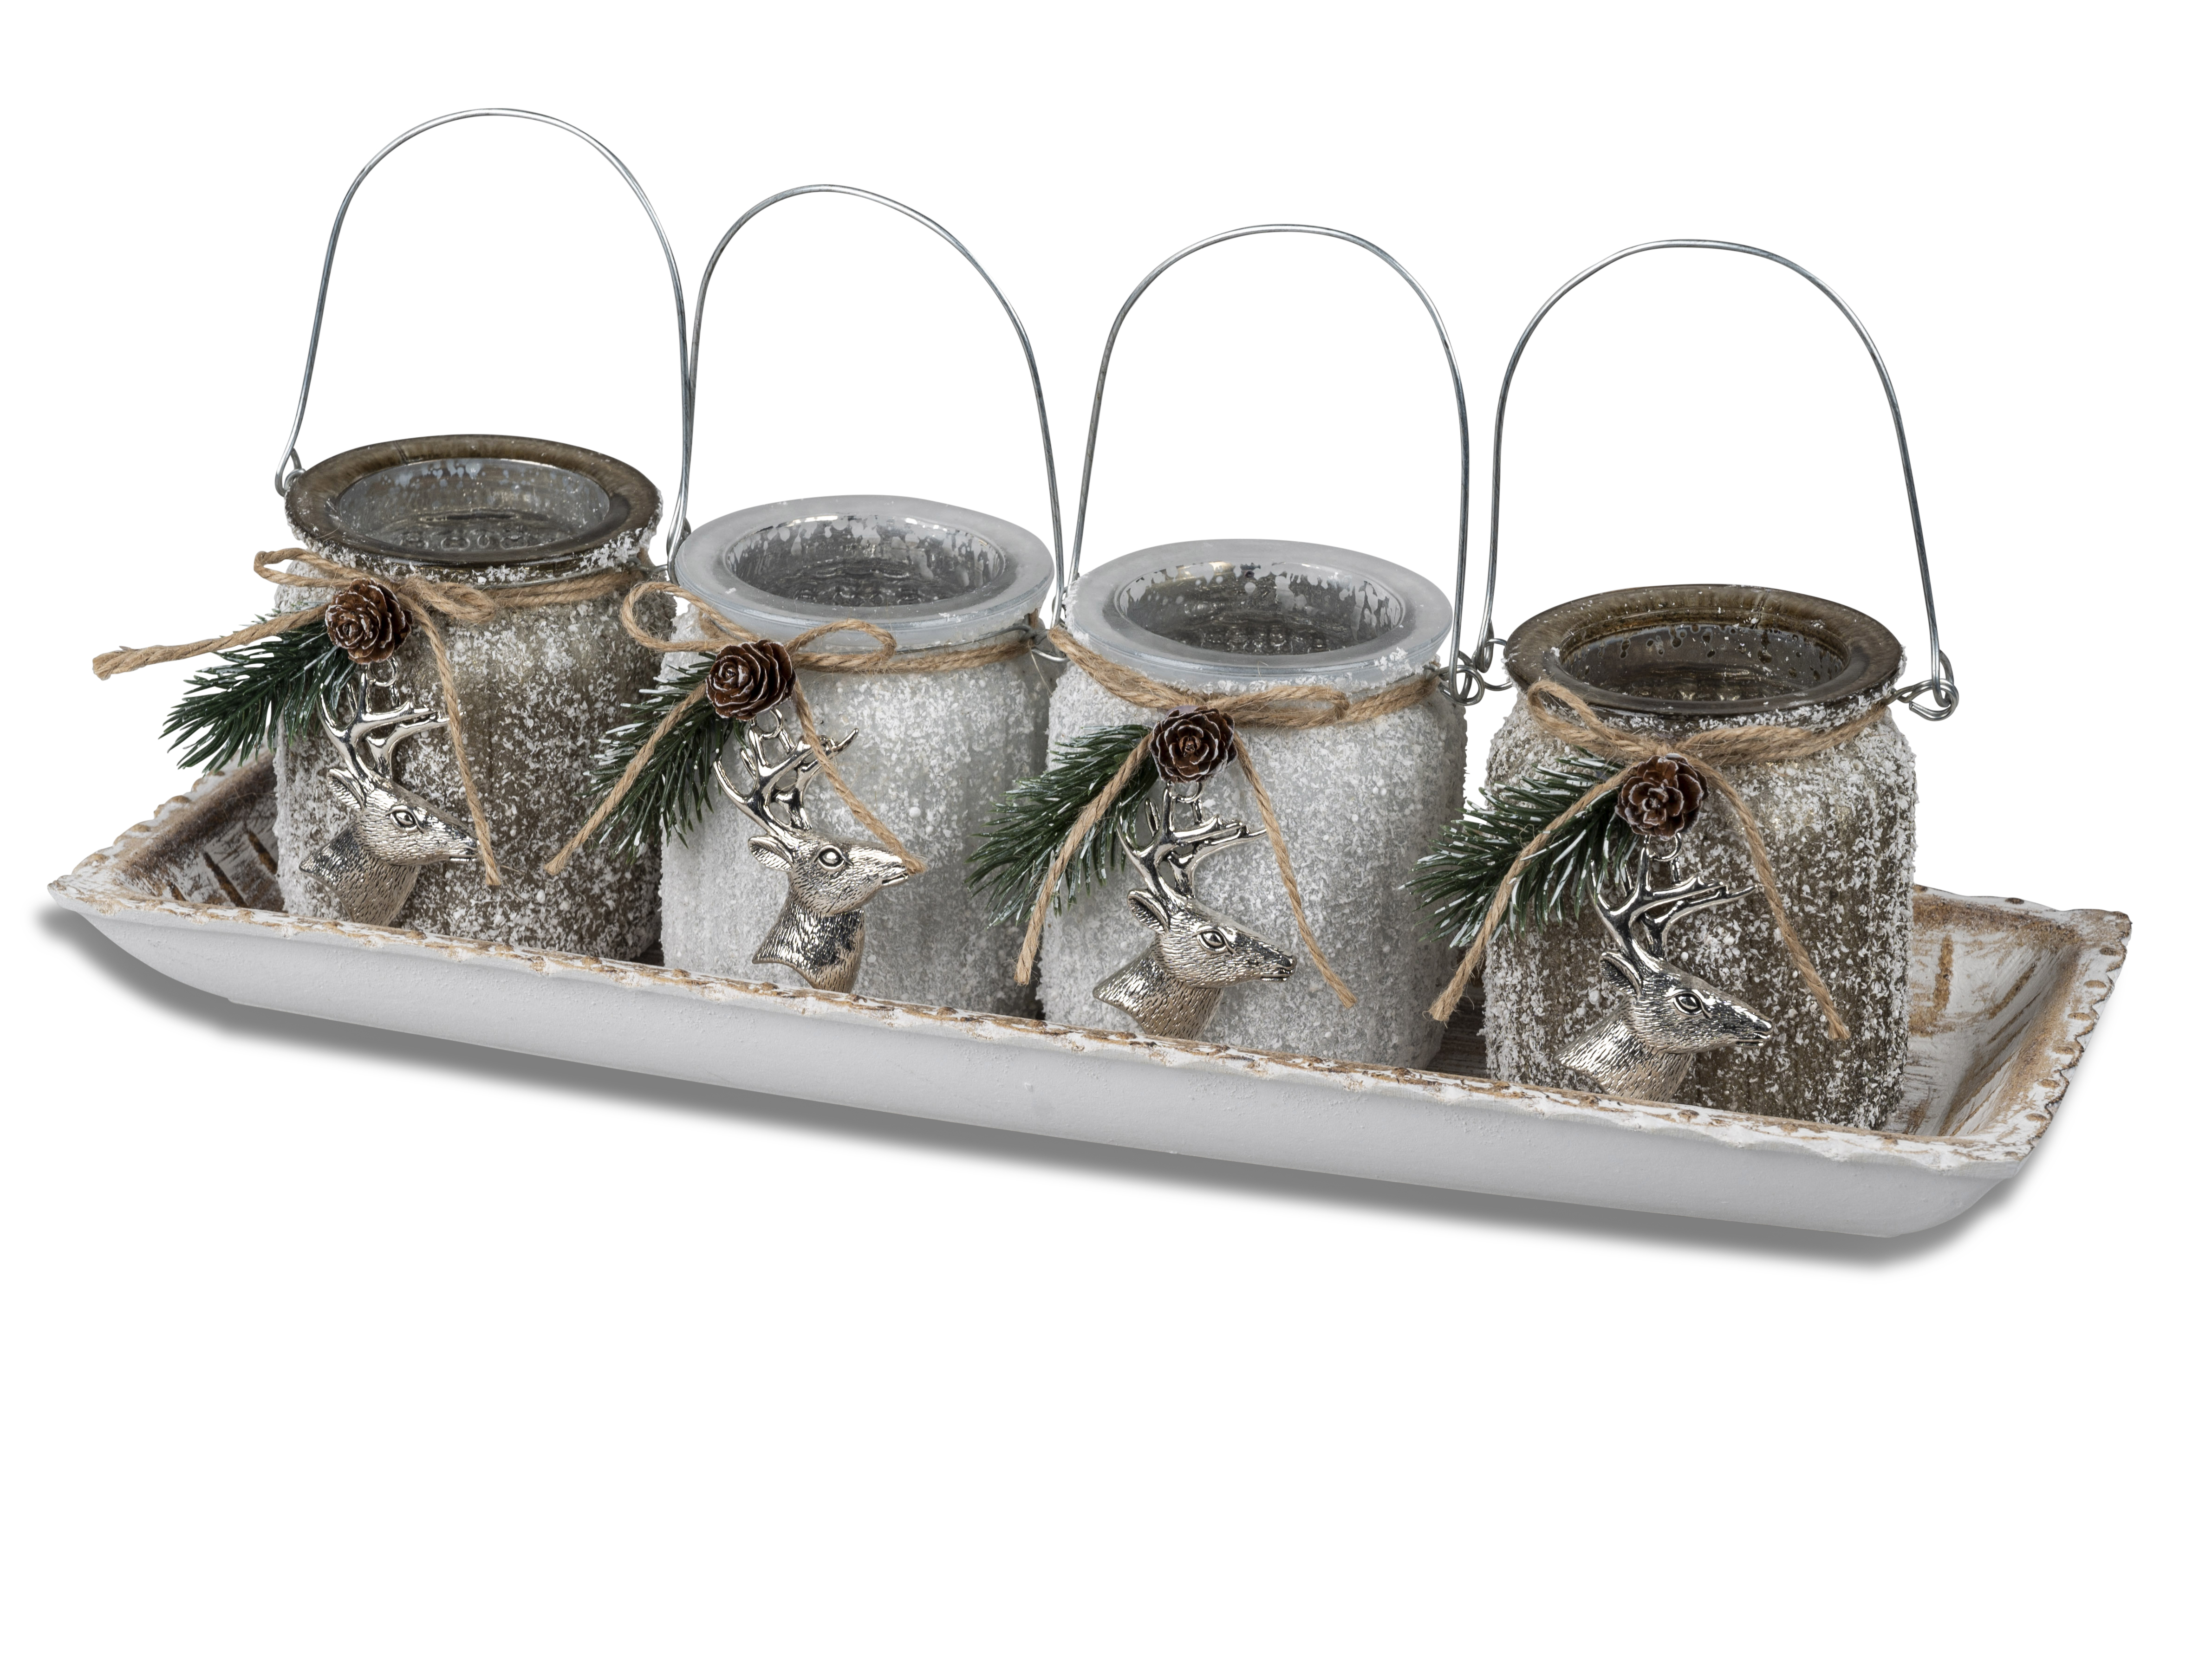 5tlg. SET Adventsleuchter Platte m. 4 Teelichtleuchtern aus farbglas und silbernem Hirsch-Hänger verziert Formano